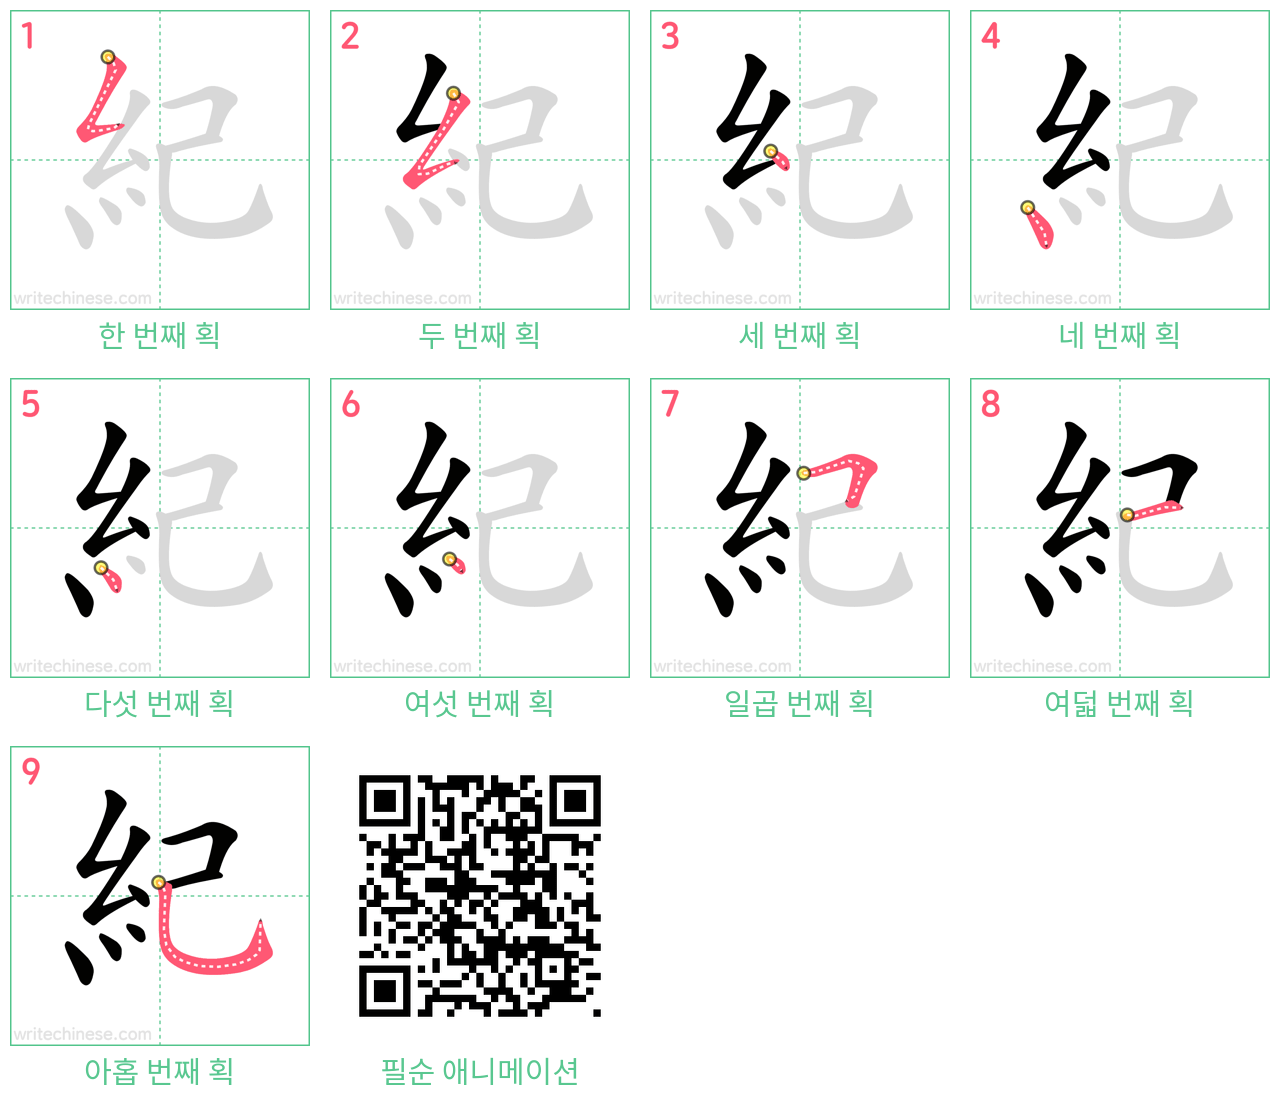 紀 step-by-step stroke order diagrams